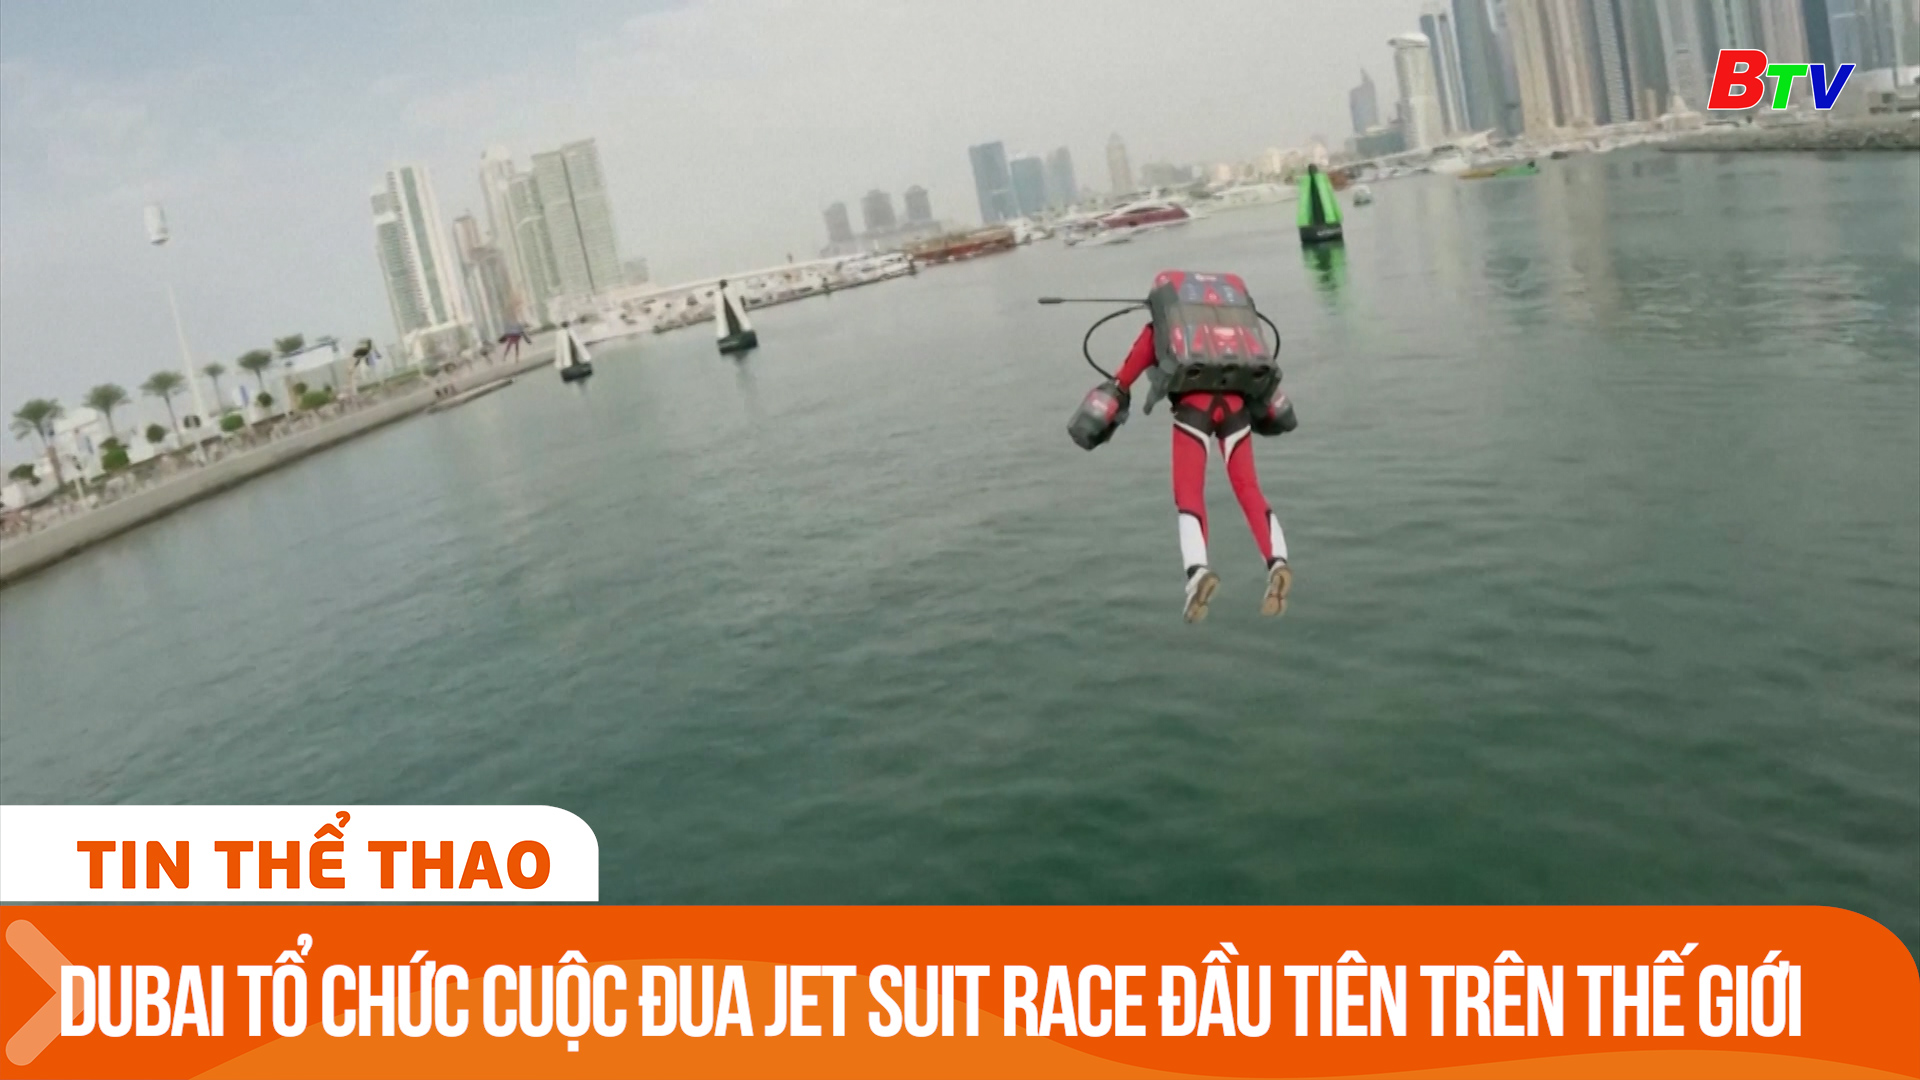 Dubai tổ chức cuộc đua Jet Suit Race đầu tiên trên thế giới | Tin Thể thao 24h